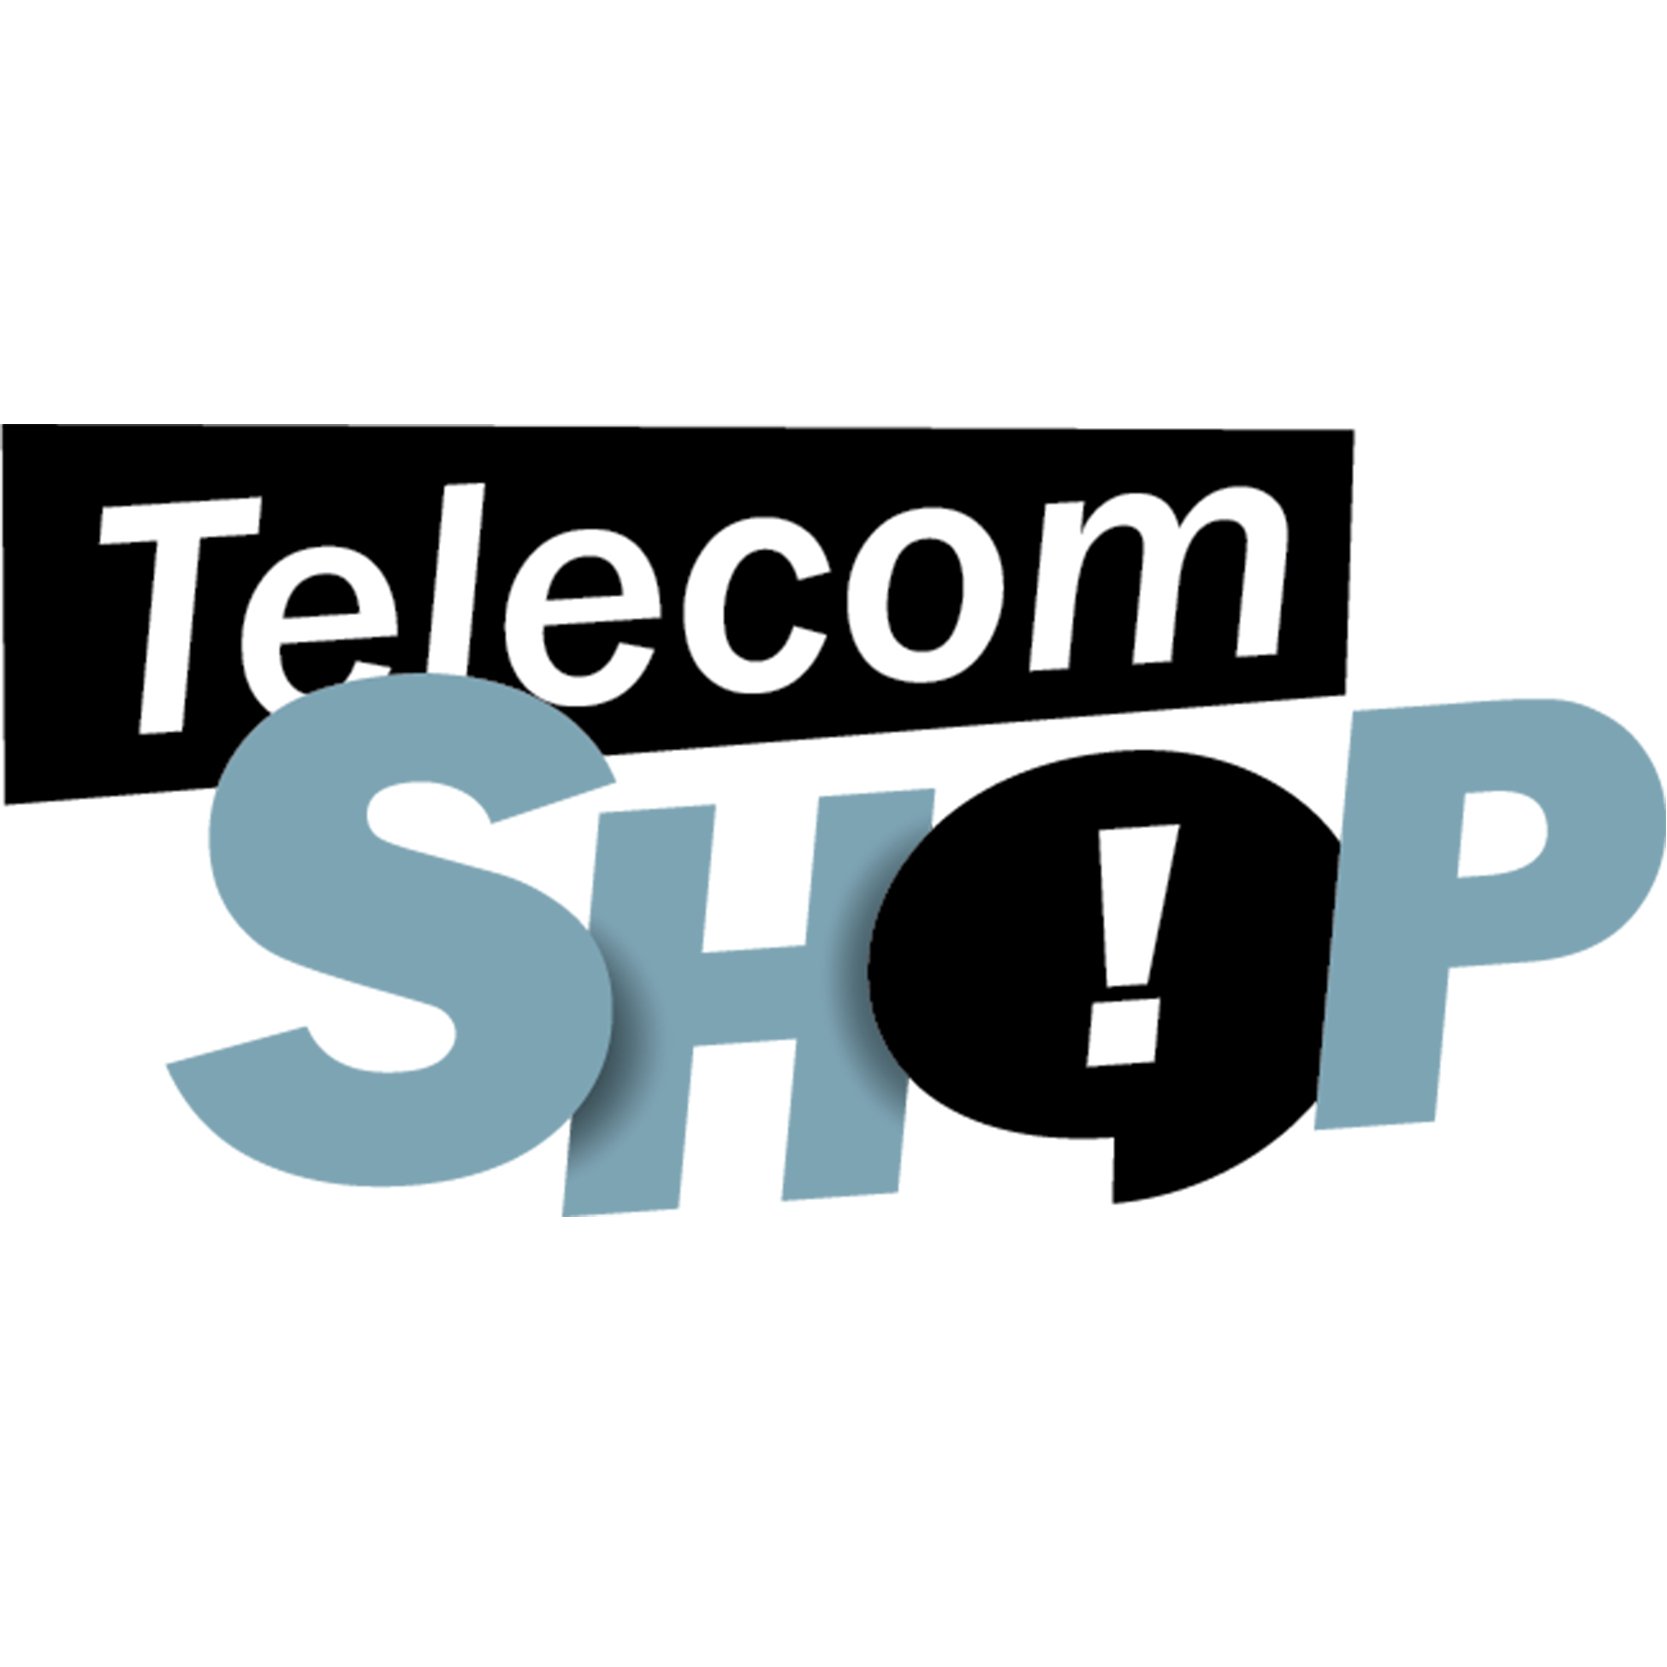 TelecomShop